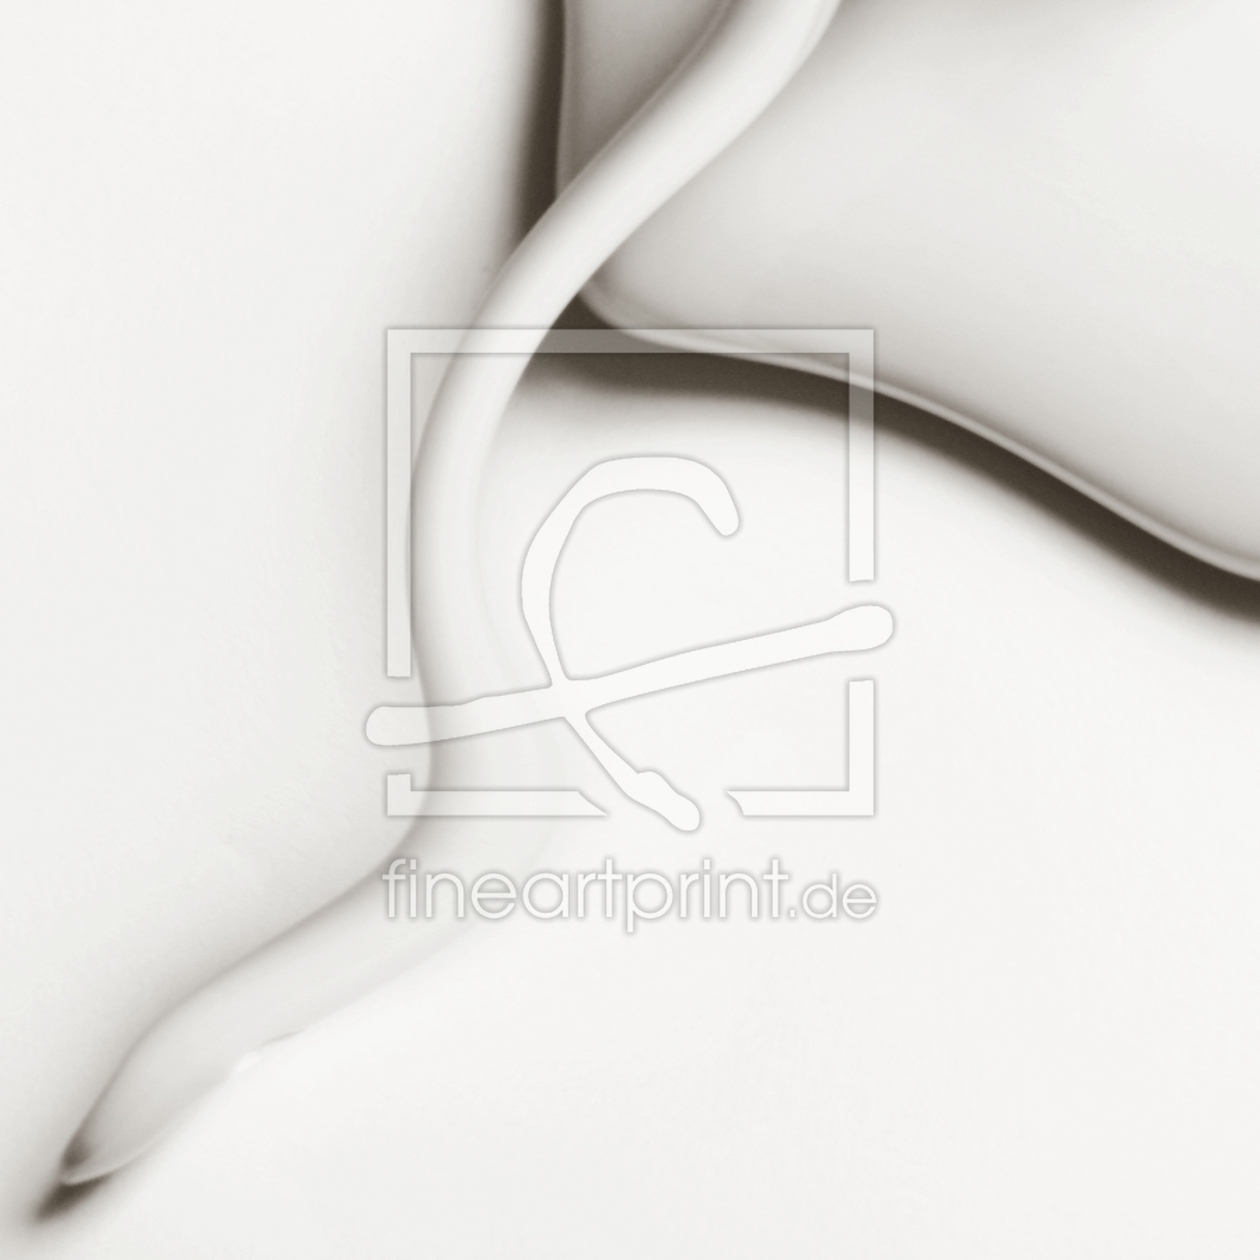 Bild-Nr.: 9768900 white curves erstellt von RamonaG